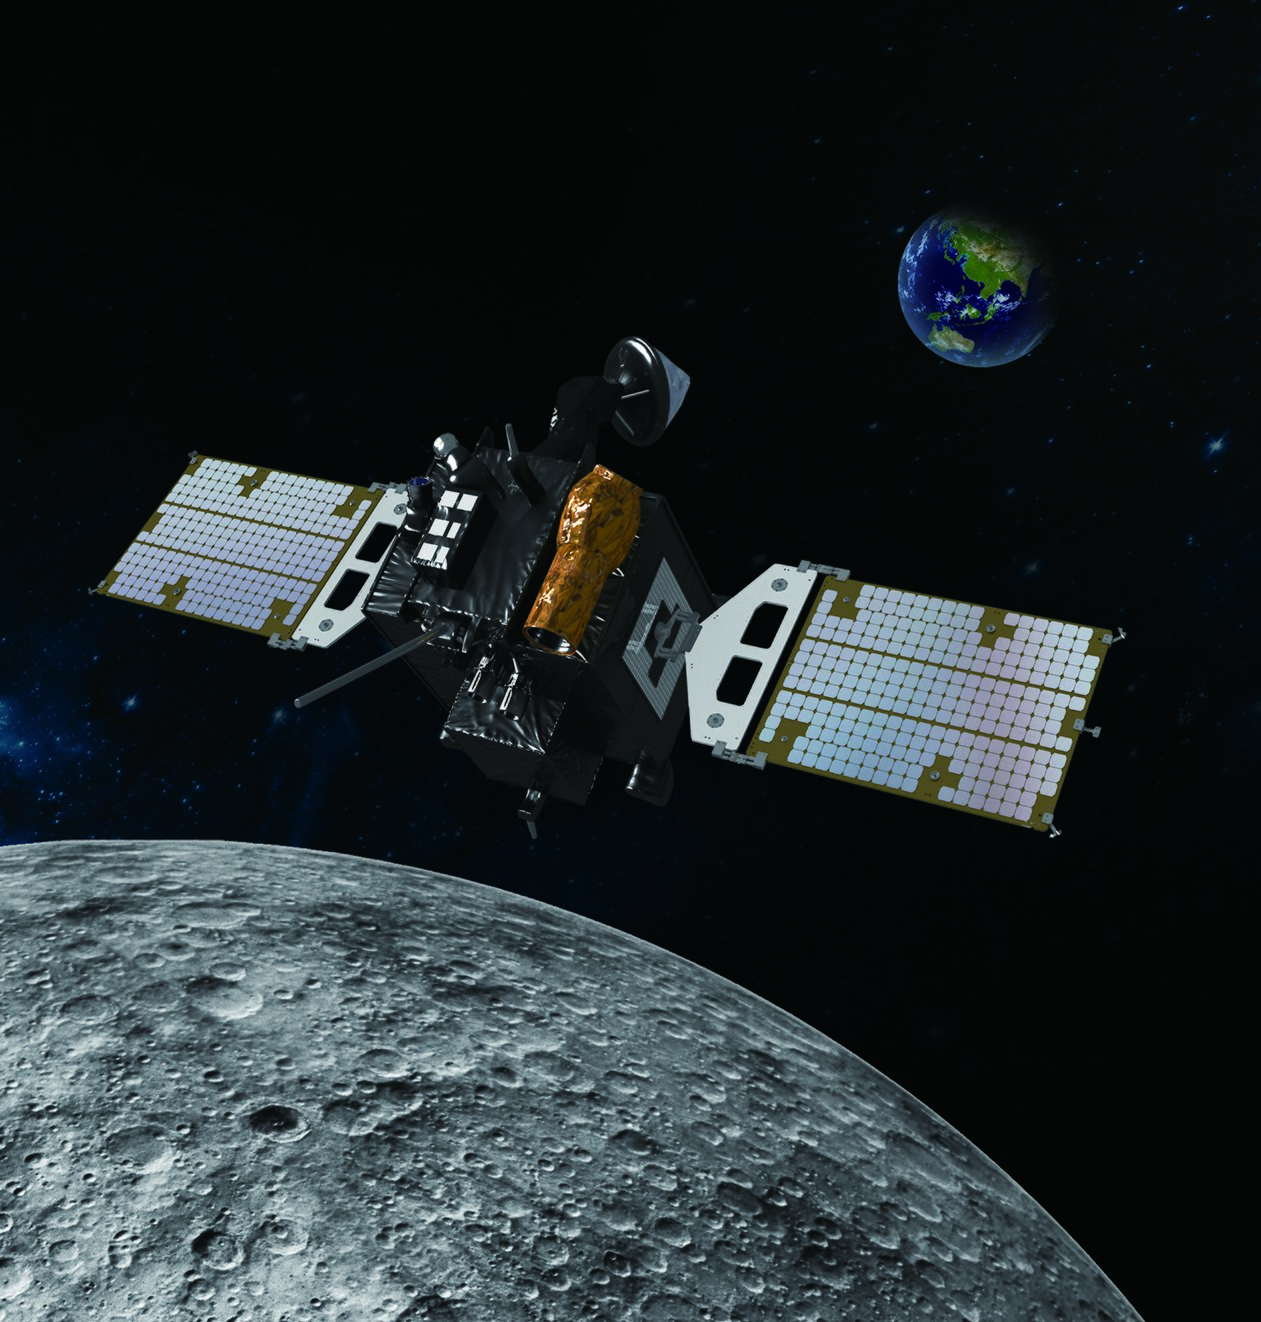 Danuri, o primeiro orbitador lunar da Coréia.  O satélite está equipado com uma câmera de alta resolução, magnetômetro, espectrômetro de raios gama e uma câmera polarizadora de campo amplo.  foto por acaso